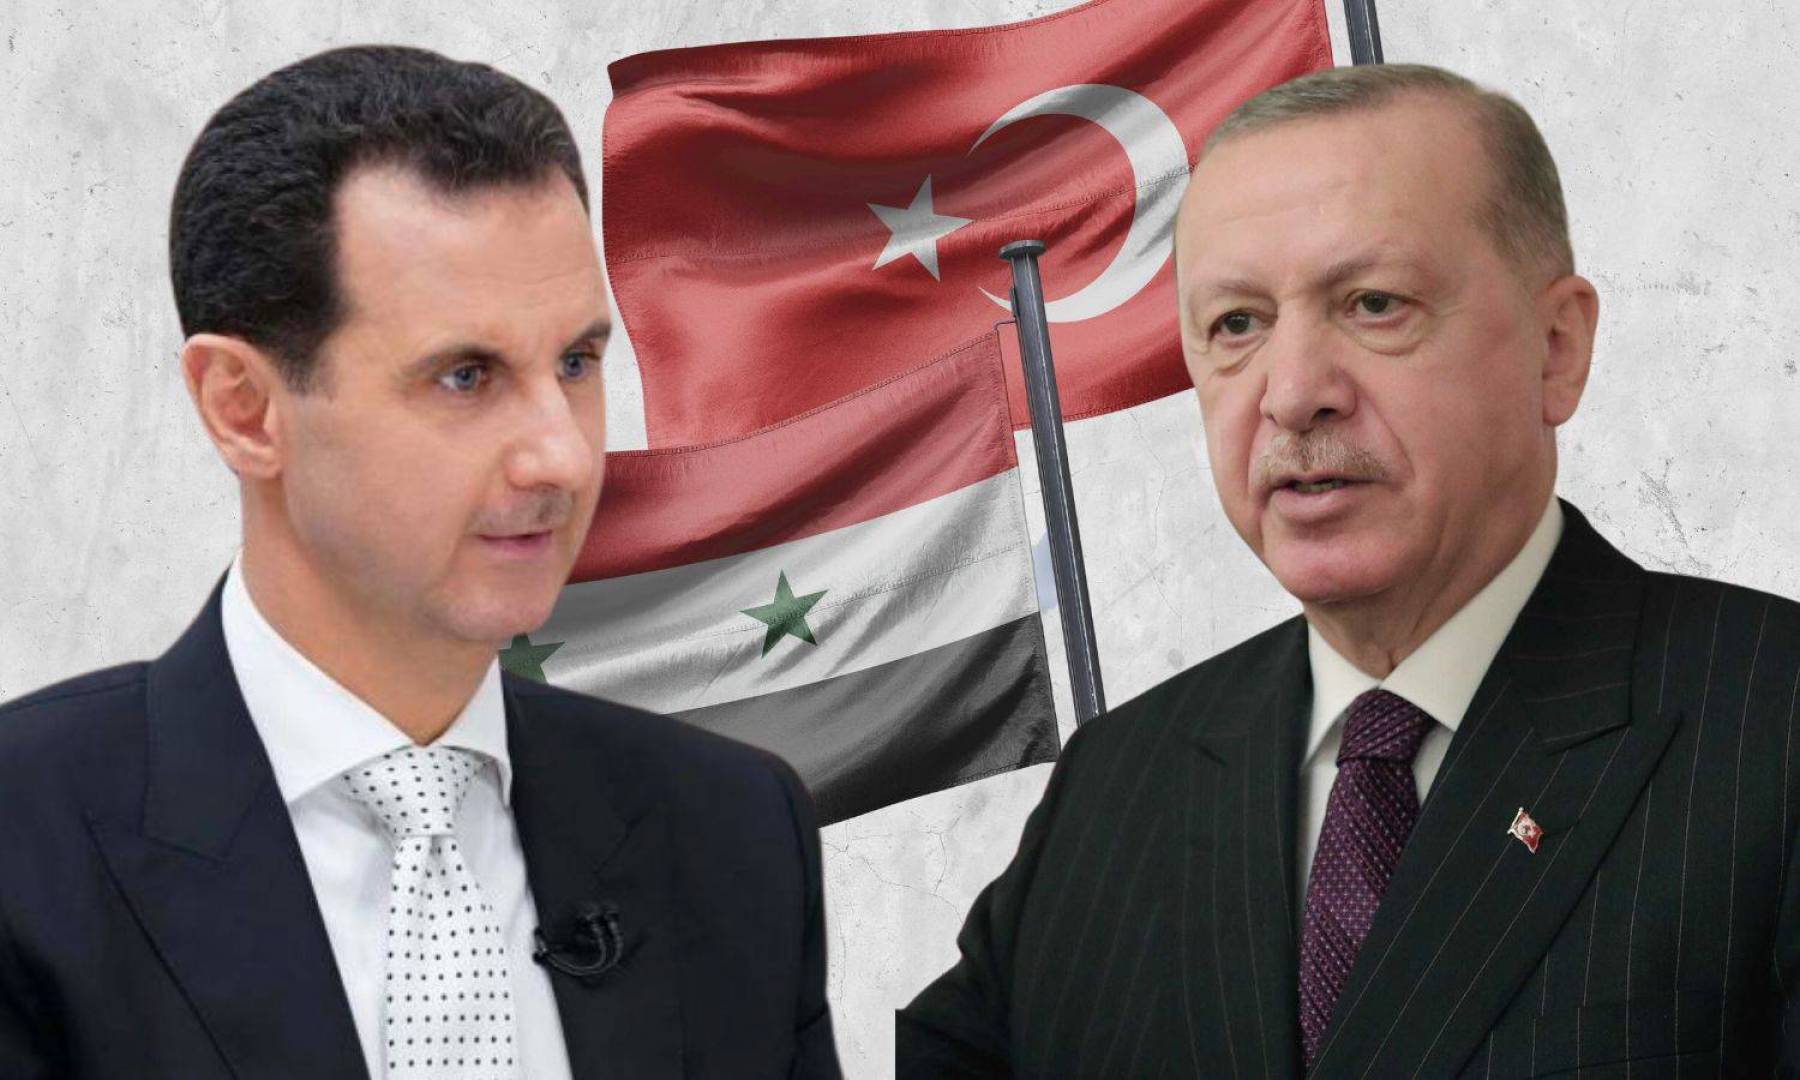 ليست لدينا أطماع في سوريا.....أردوغان: الحوار مع دمشق غير مستبعد